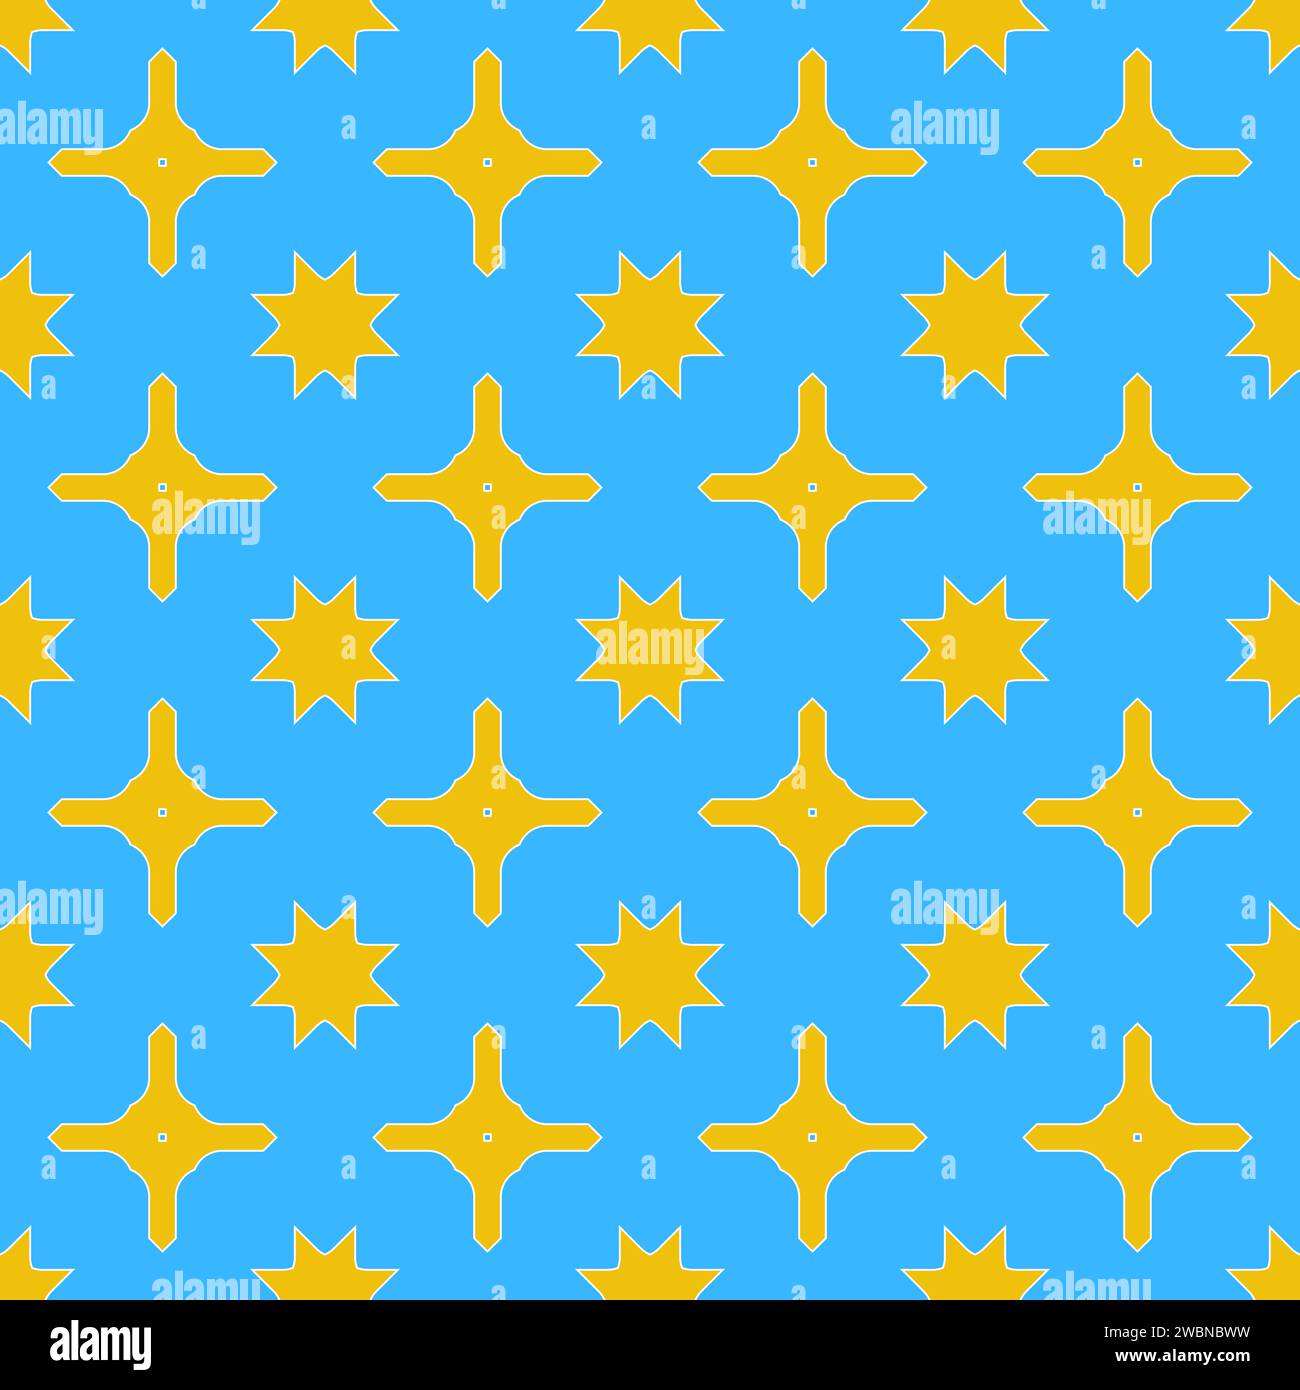 Ein nahtloser Hintergrund mit einer sanften hellblauen Farbe, verziert mit einem wiederholten Muster aus leuchtenden gelben und blauen Sternen Stockfoto